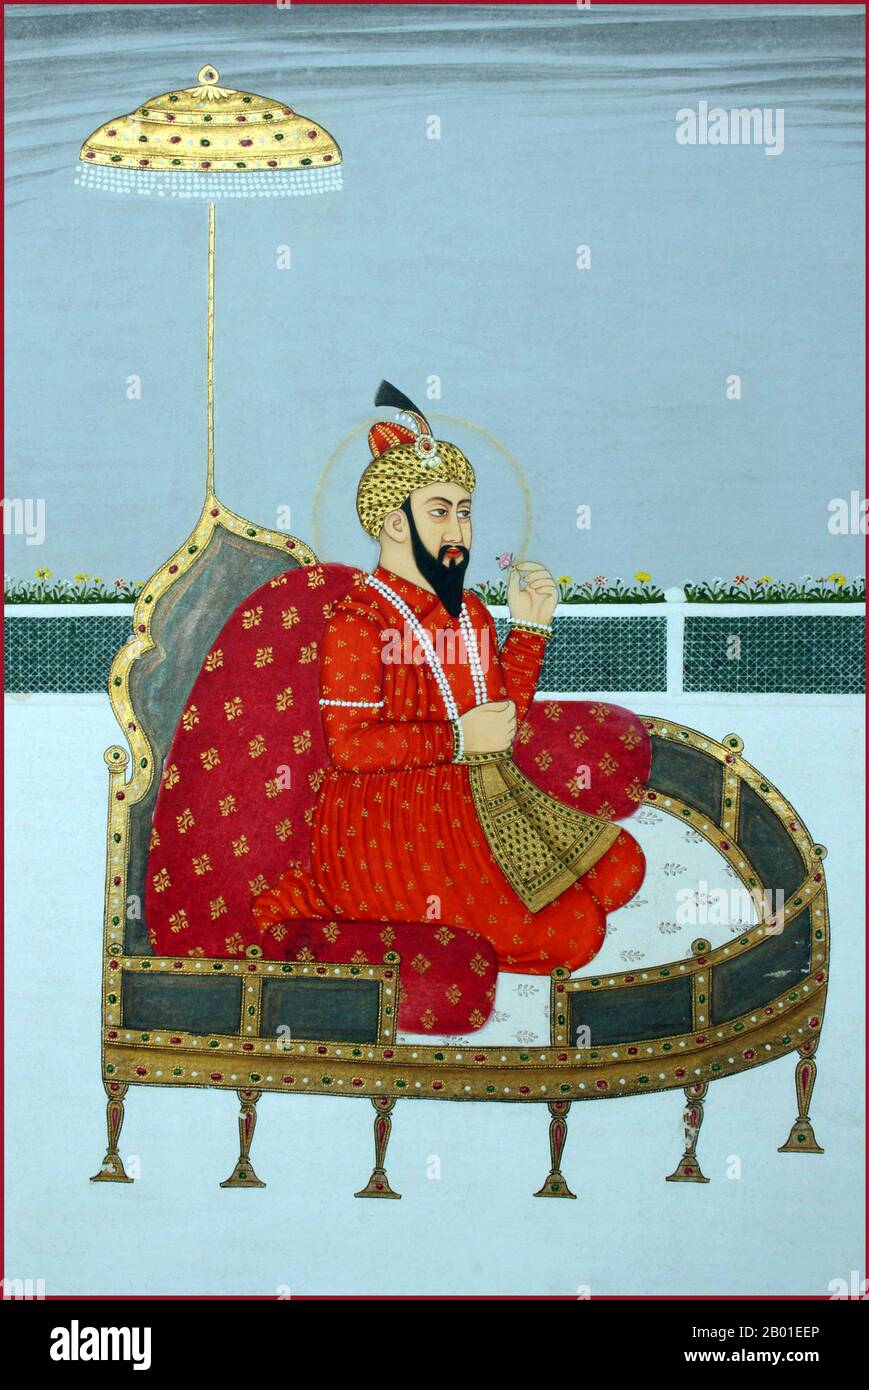 India: Zahir ud-din Muhammad Babur (1483-1531) il primo imperatore Mogul. Pittura in miniatura, 18th ° secolo. Zahir ud-din Muhammad Babur era un conquistatore musulmano dell'Asia centrale che, dopo una serie di battute d'arresto, riuscì finalmente a gettare le basi della dinastia Mughal dell'Asia meridionale. Era un discendente diretto di Timur attraverso suo padre, e un discendente anche di Genghis Khan attraverso sua madre. Babur identificò il suo lignaggio come Timurid e Chaghatay-Turkic, mentre la sua origine, il suo ambiente, la sua formazione e la sua cultura erano immersi nella cultura persiana. Foto Stock